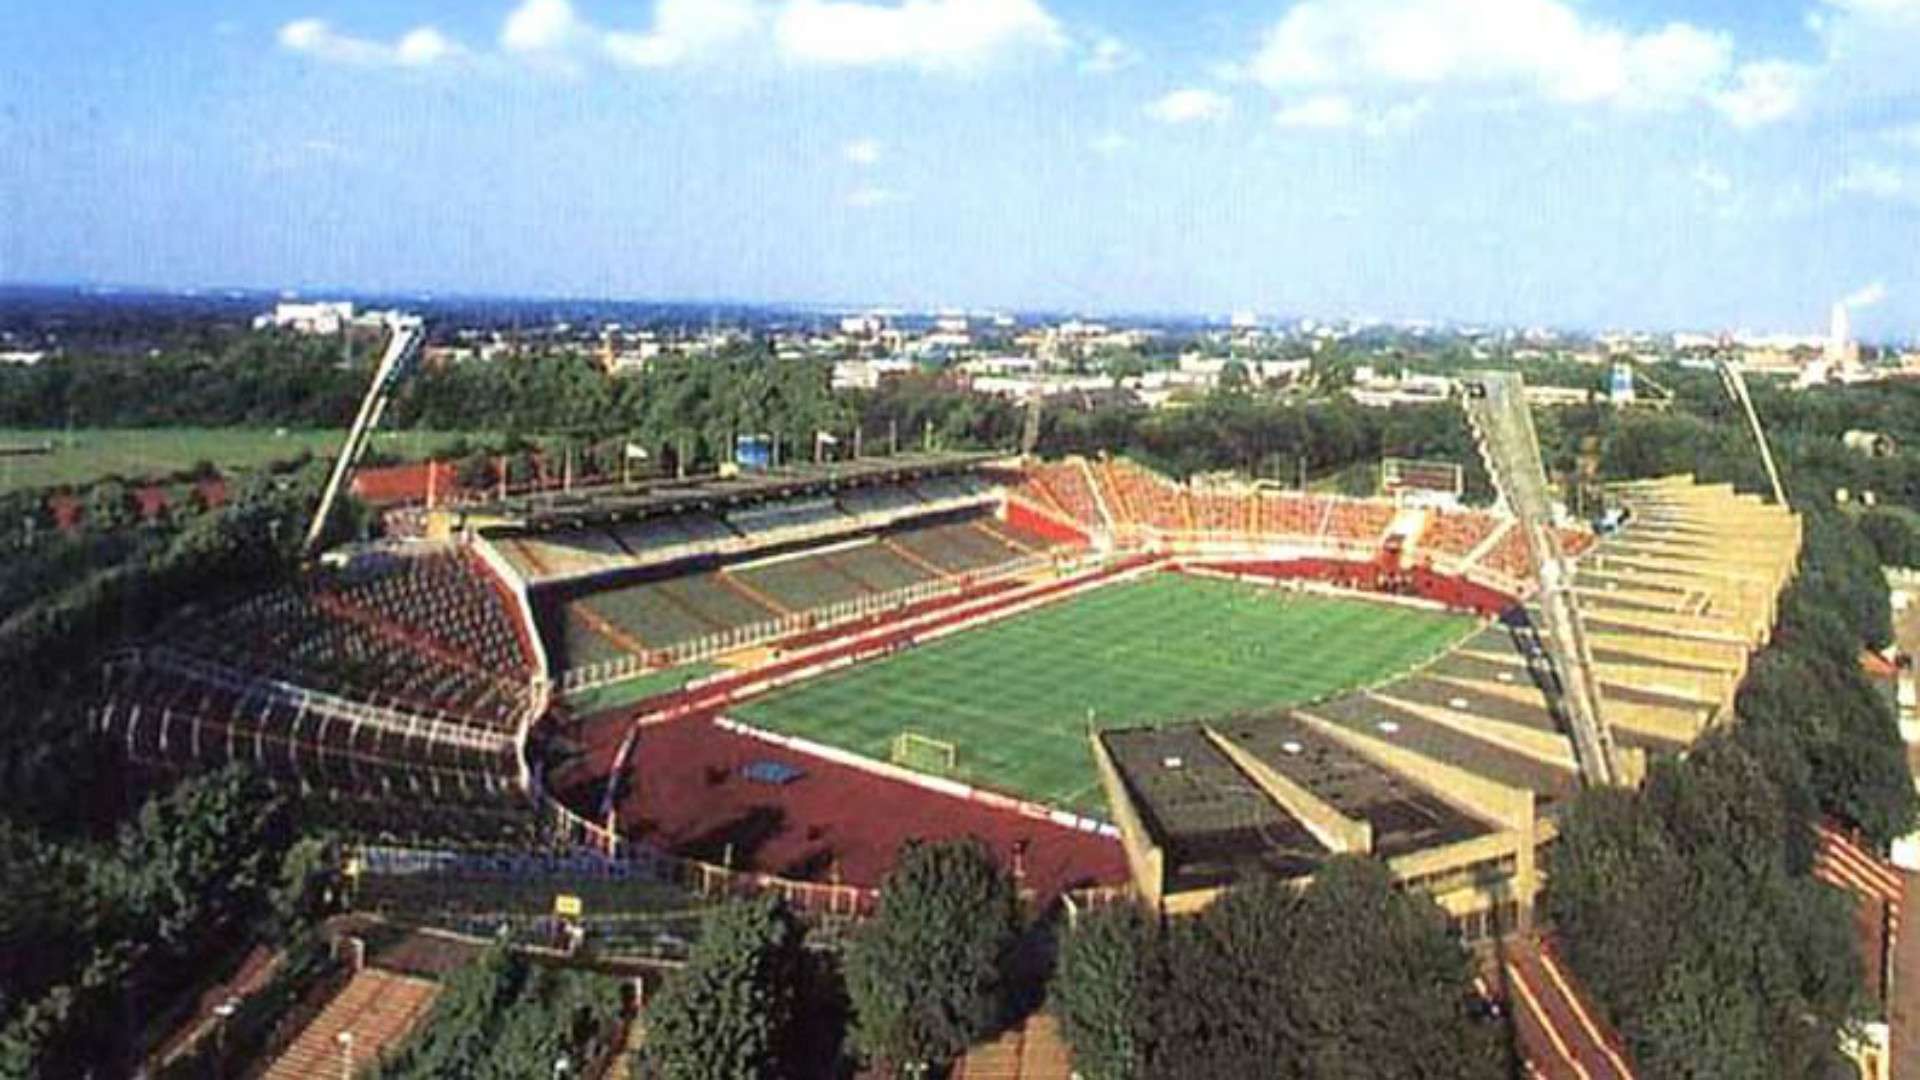 Volkspartstadion